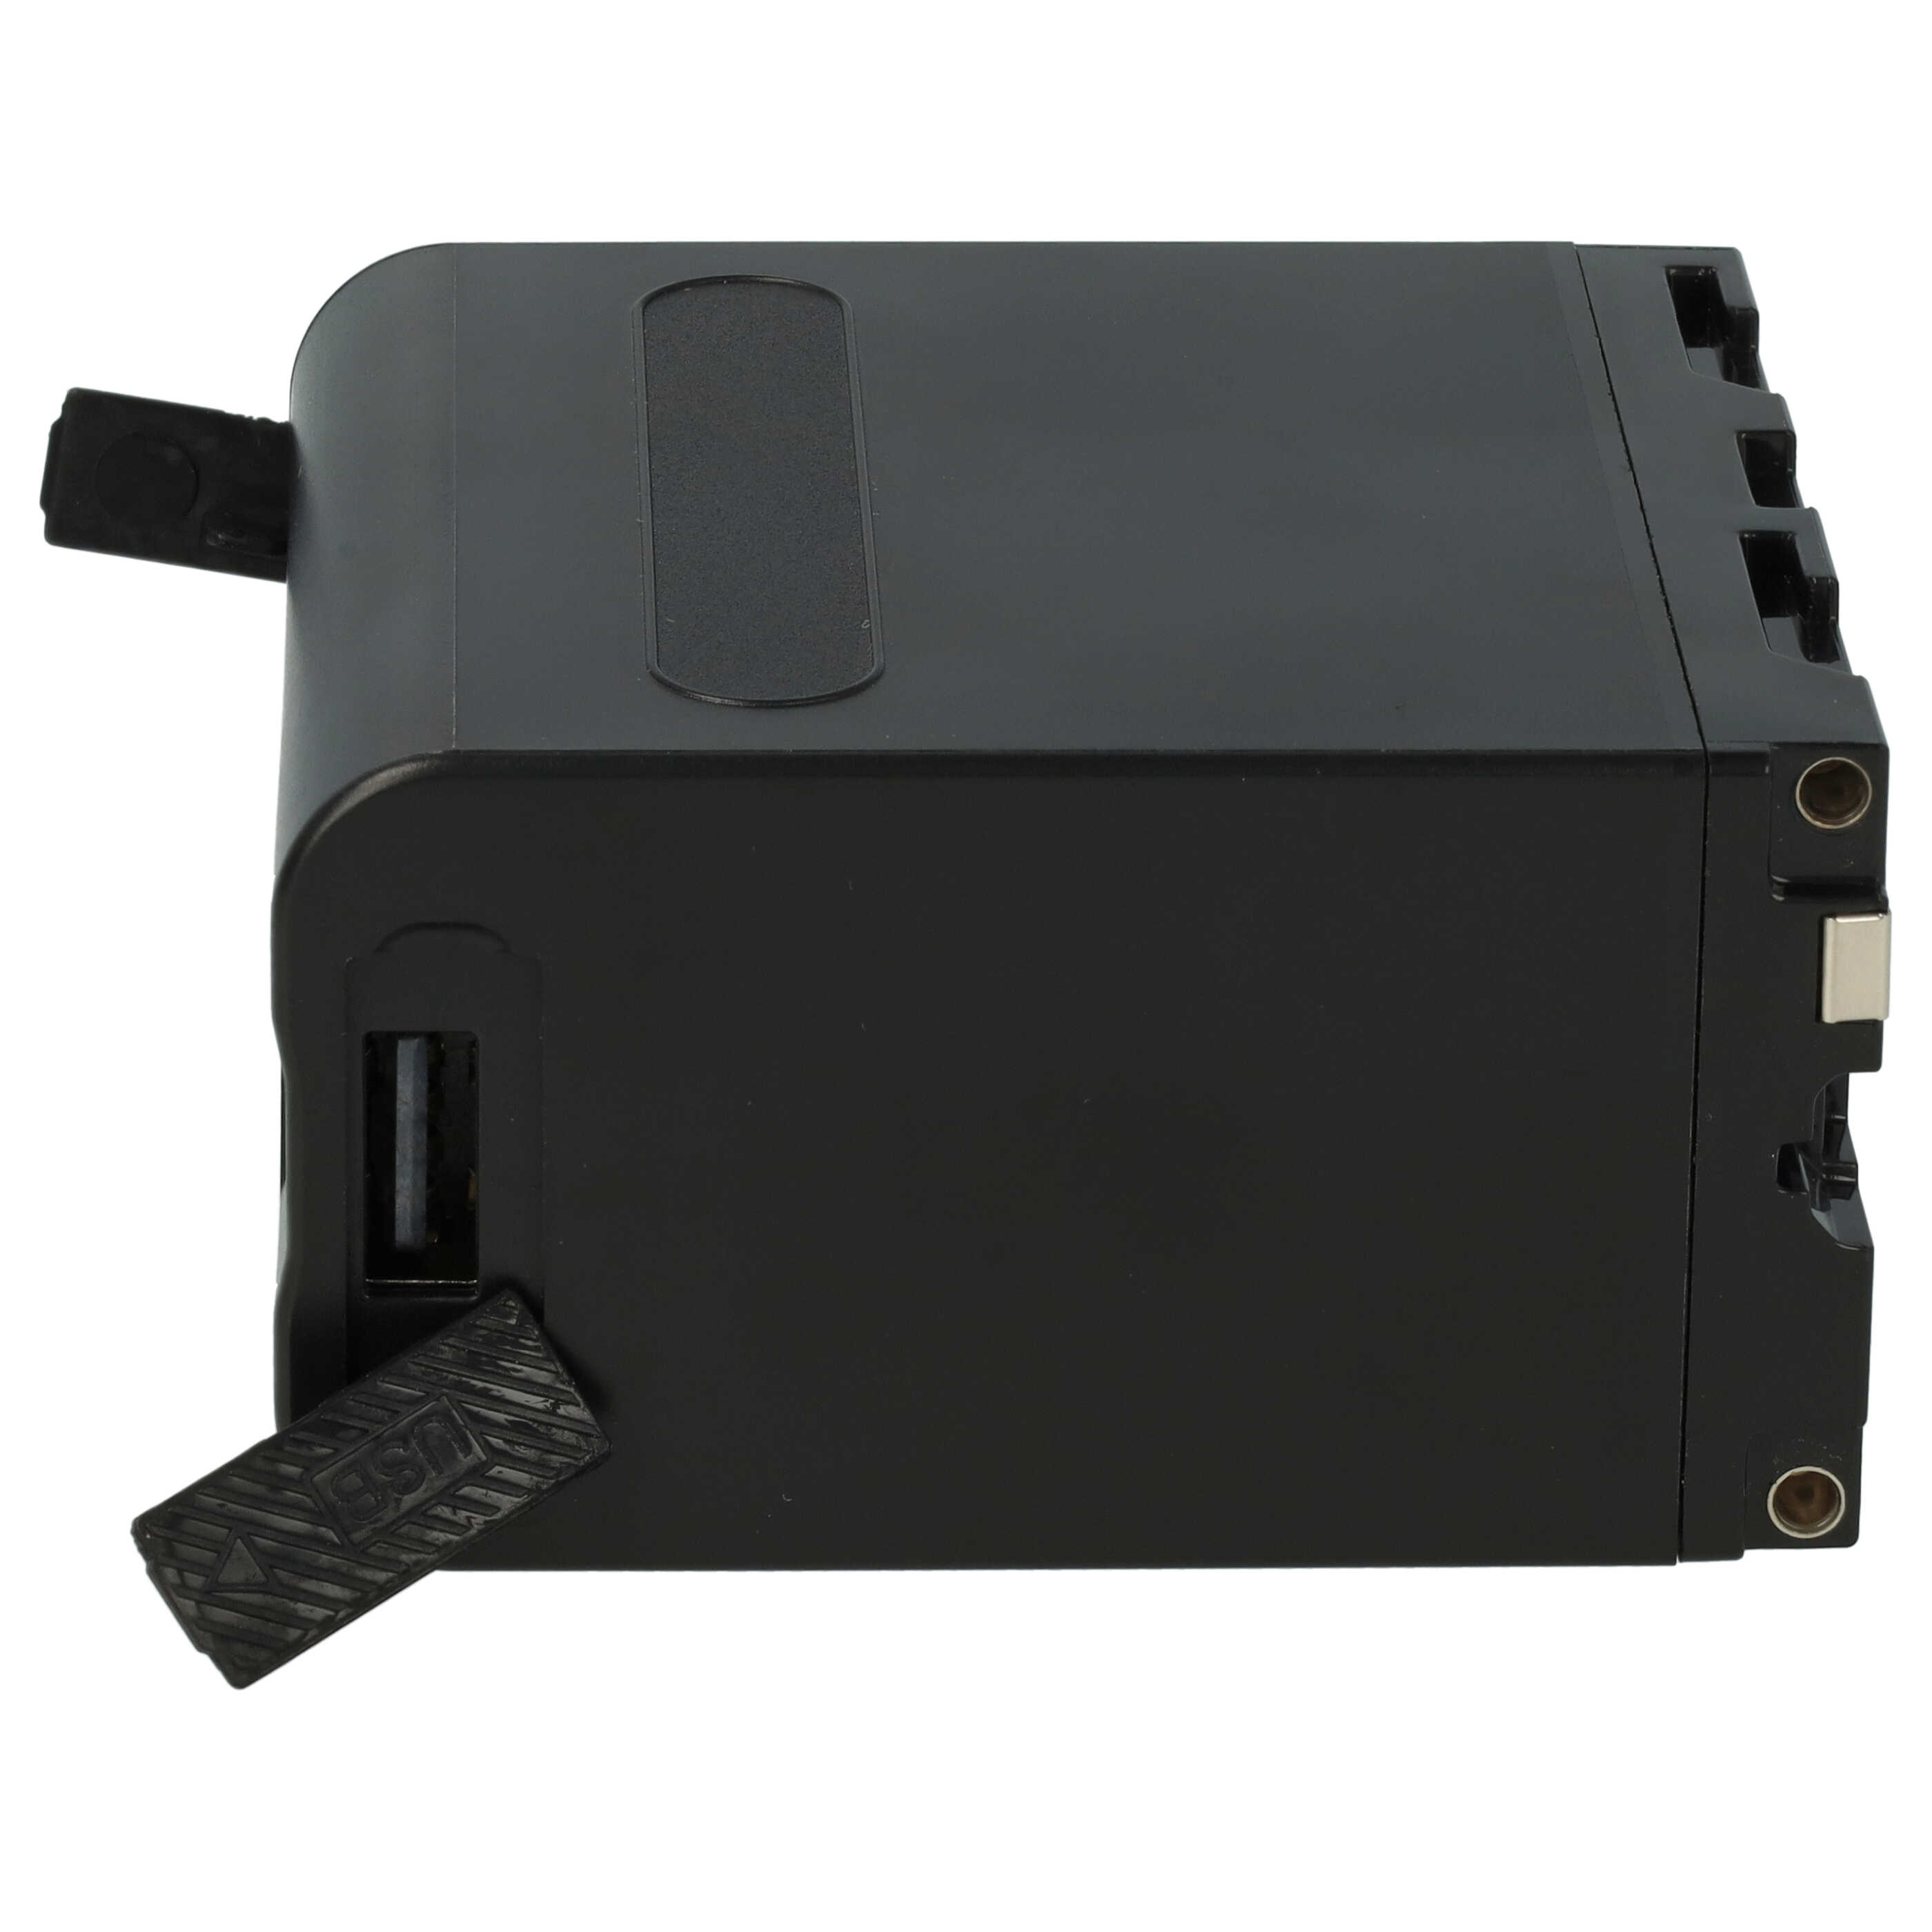 Kamera-Akku als Ersatz für Sony NP-F970, NP-F960, NP-F950, NP-F930 - 7800mAh 7,4V Li-Ion, mit USB-C Buchse